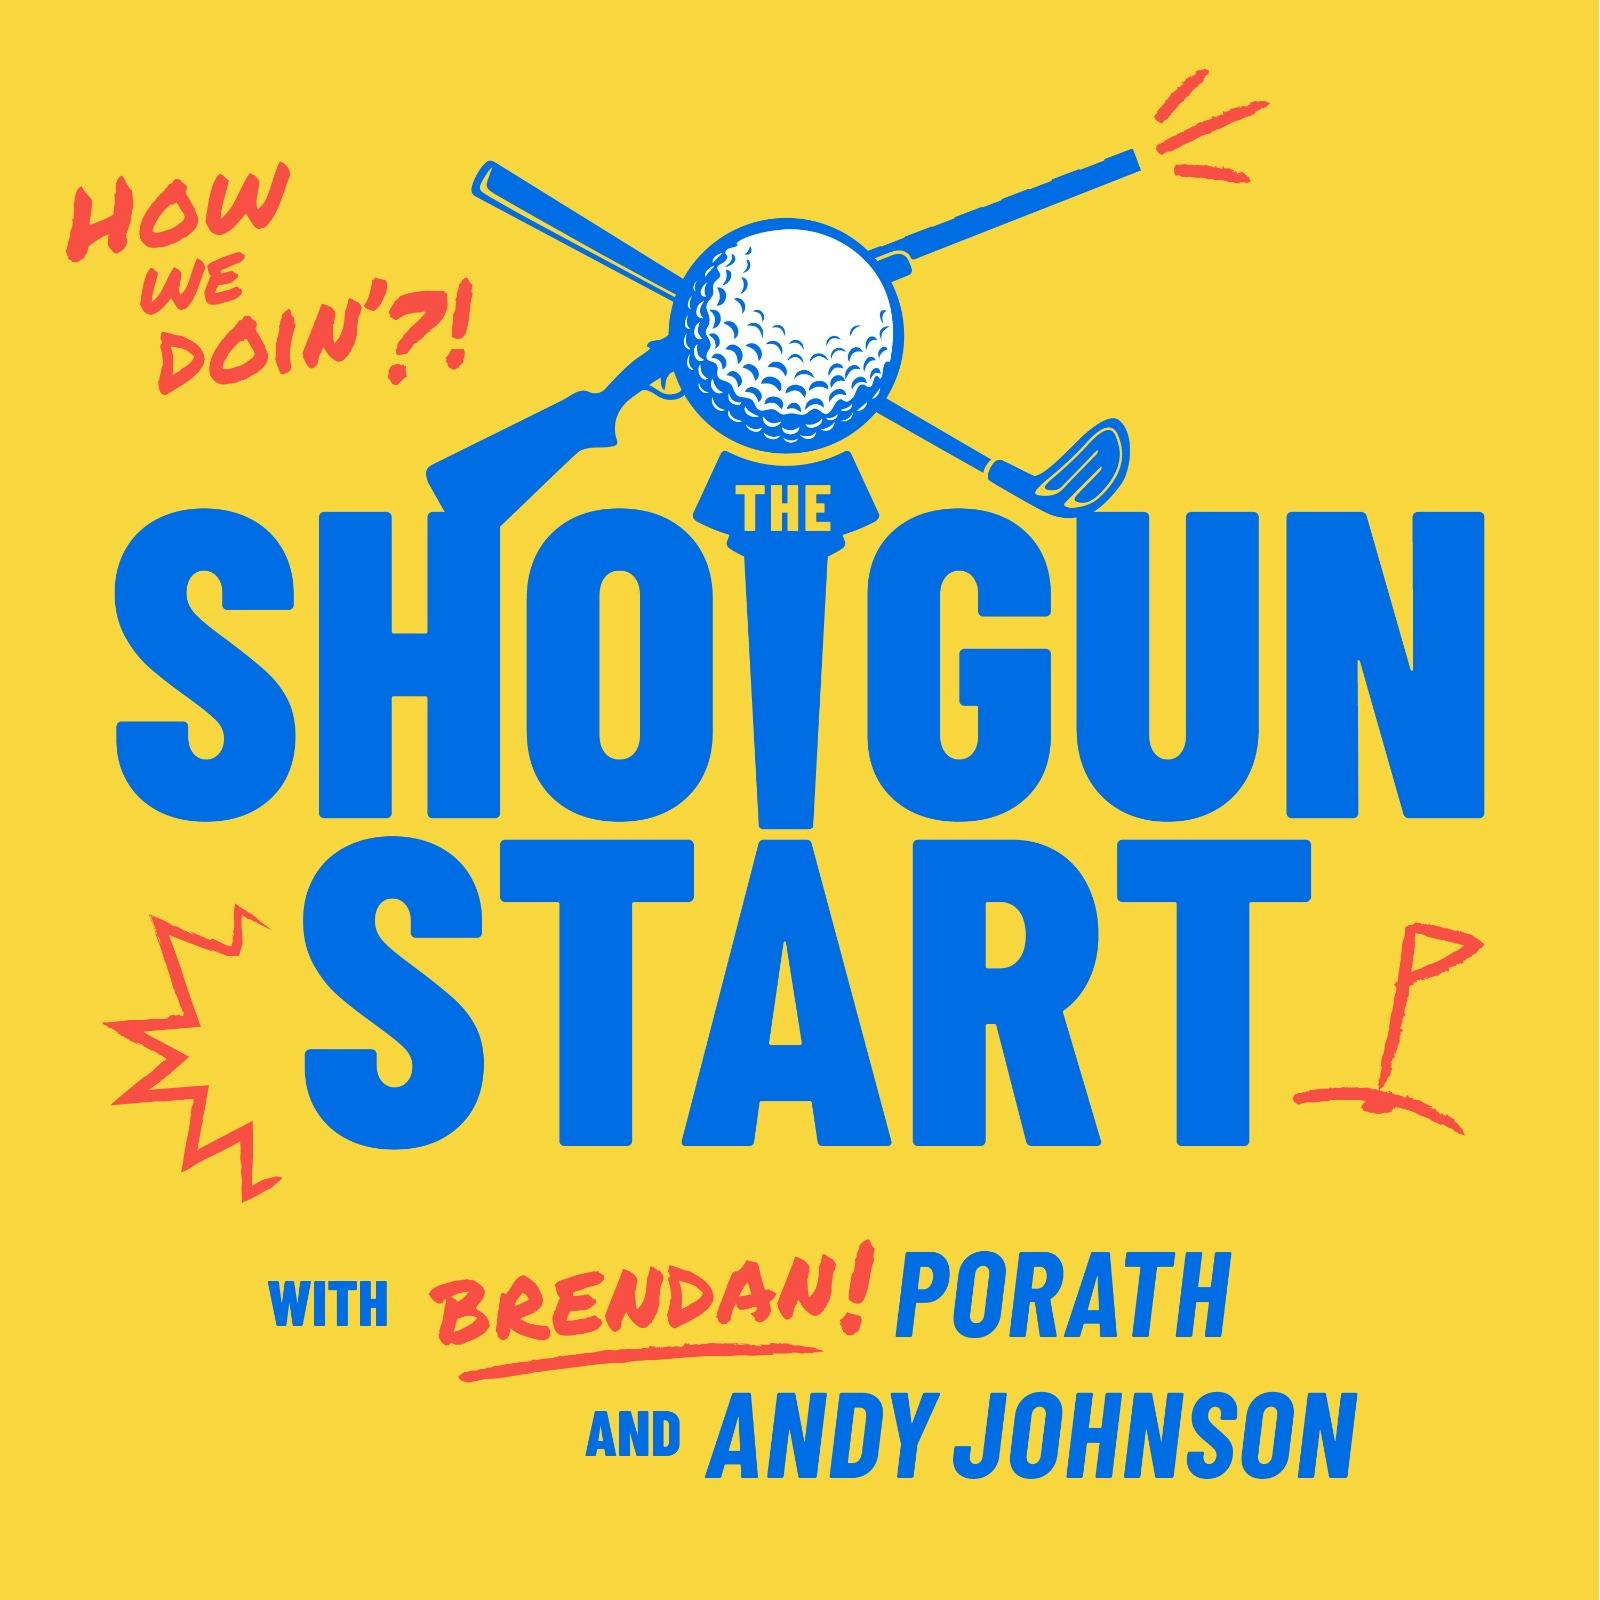 The Shotgun Start:The Shotgun Start